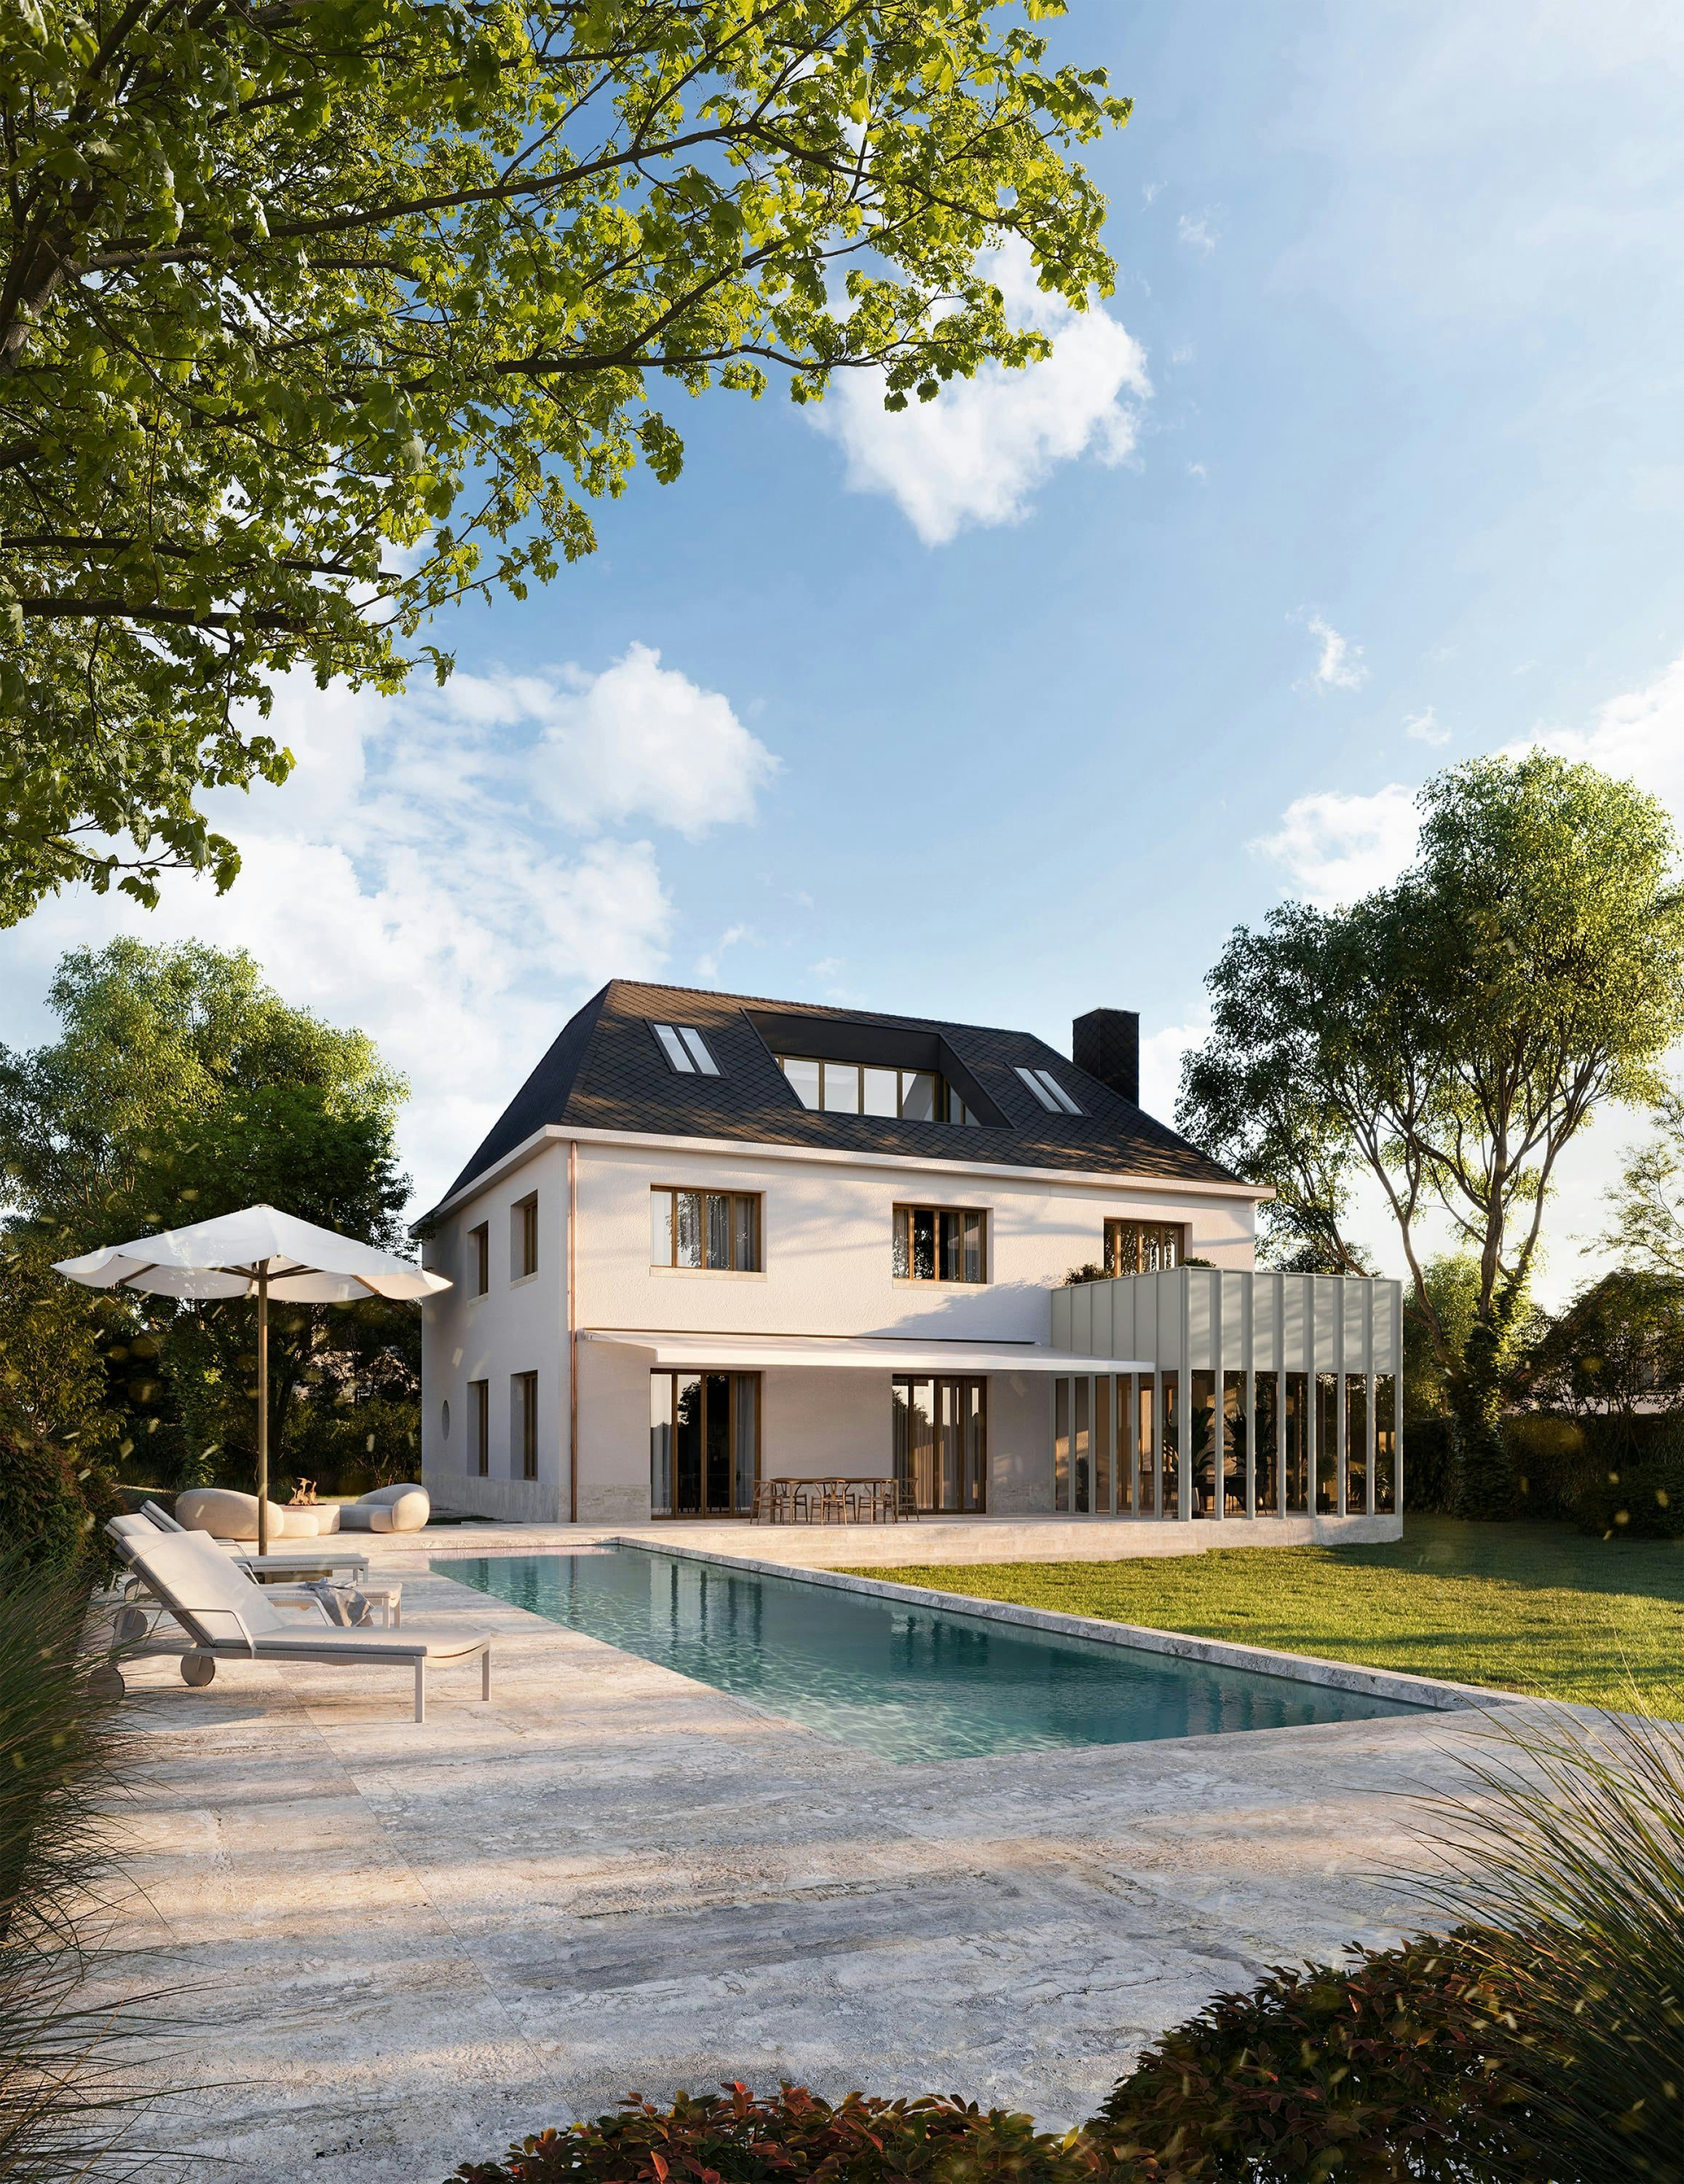 3D Architekturvisualisierung eines privaten, eleganten Hauses mit Pool und Fassadenvarianten